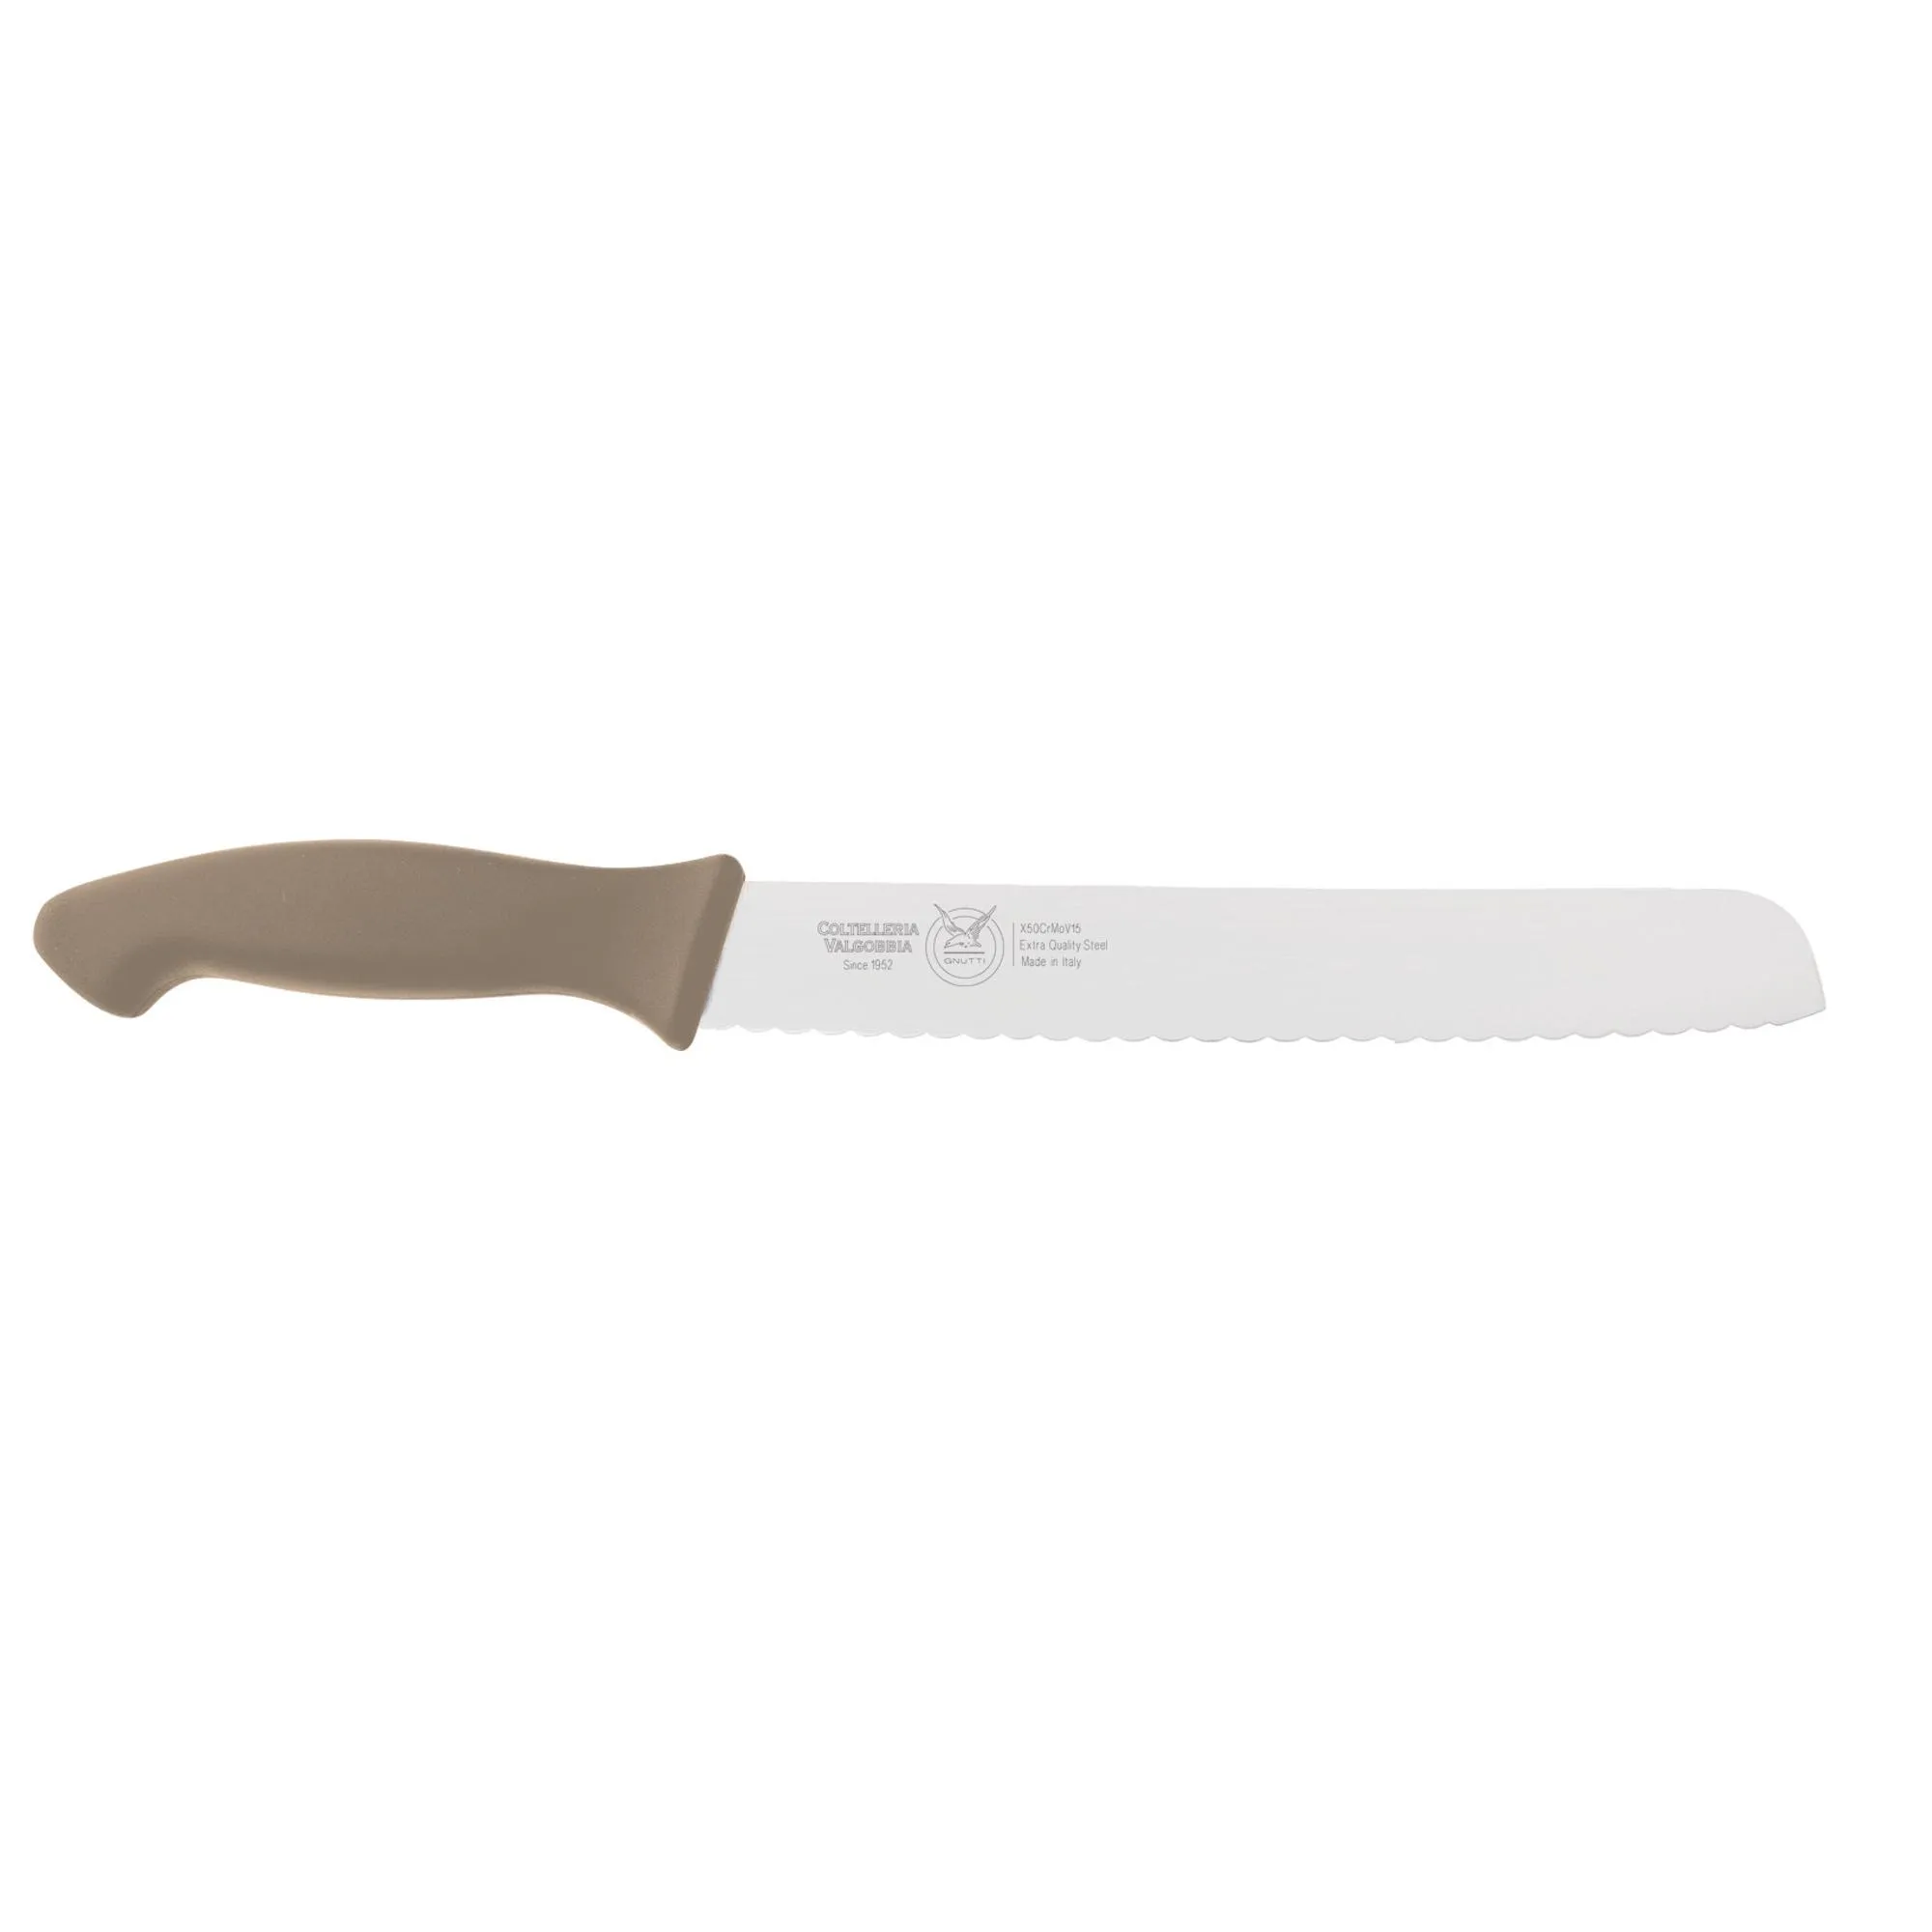 coltello pane cm 23, colore tortora, manico in gomma termoplastica